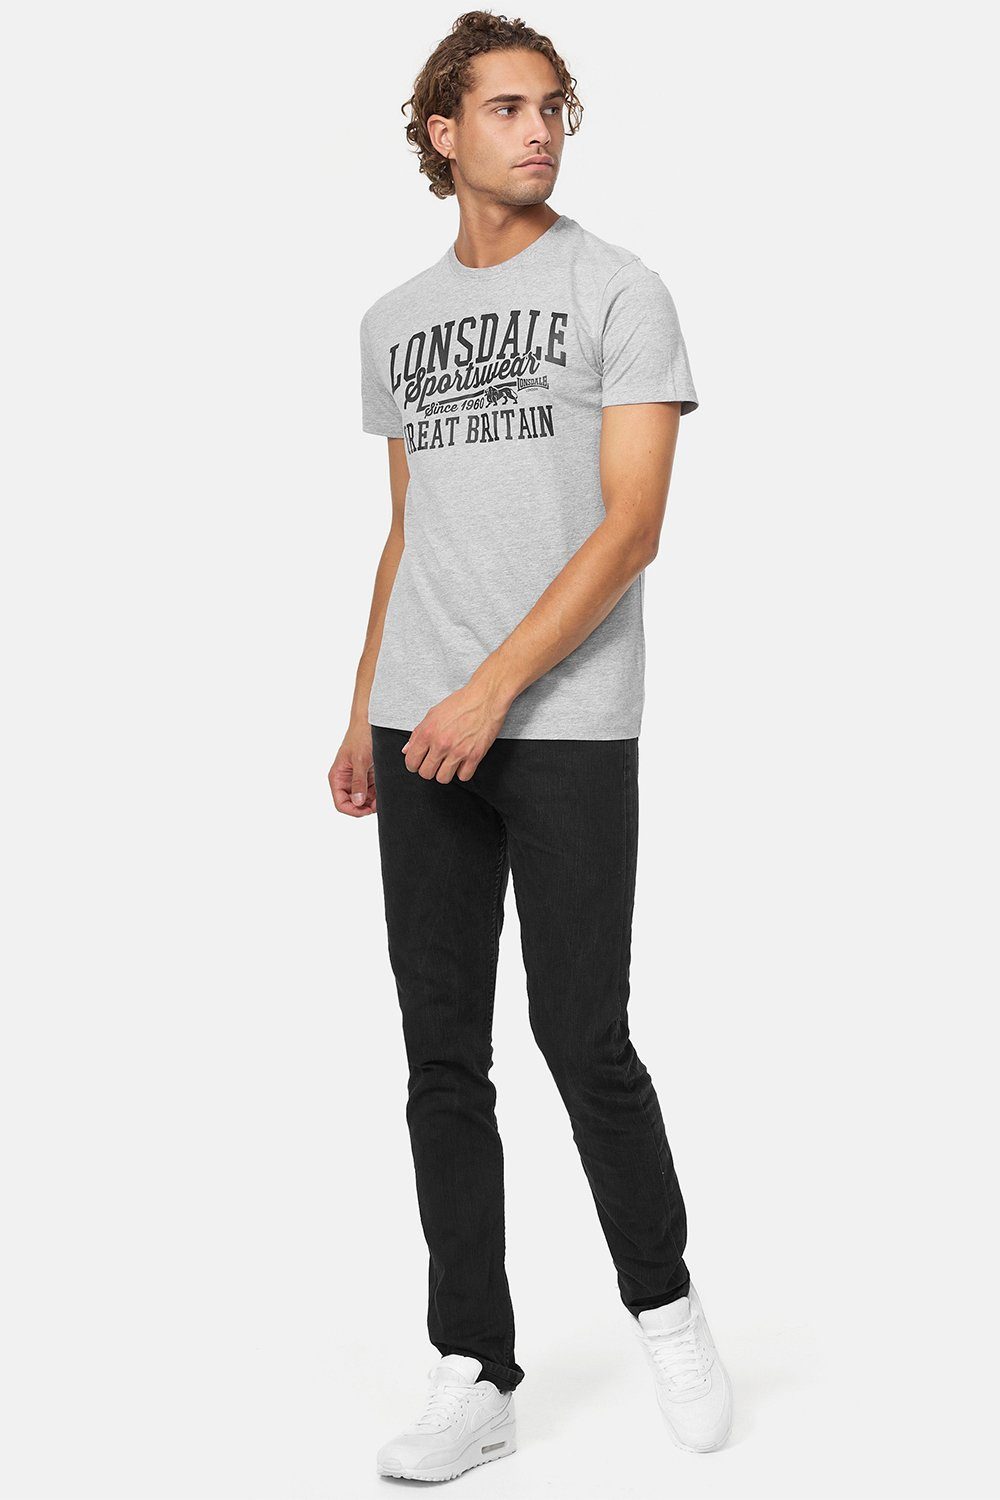 DERVAIG Lonsdale Marl Grey/Black T-Shirt